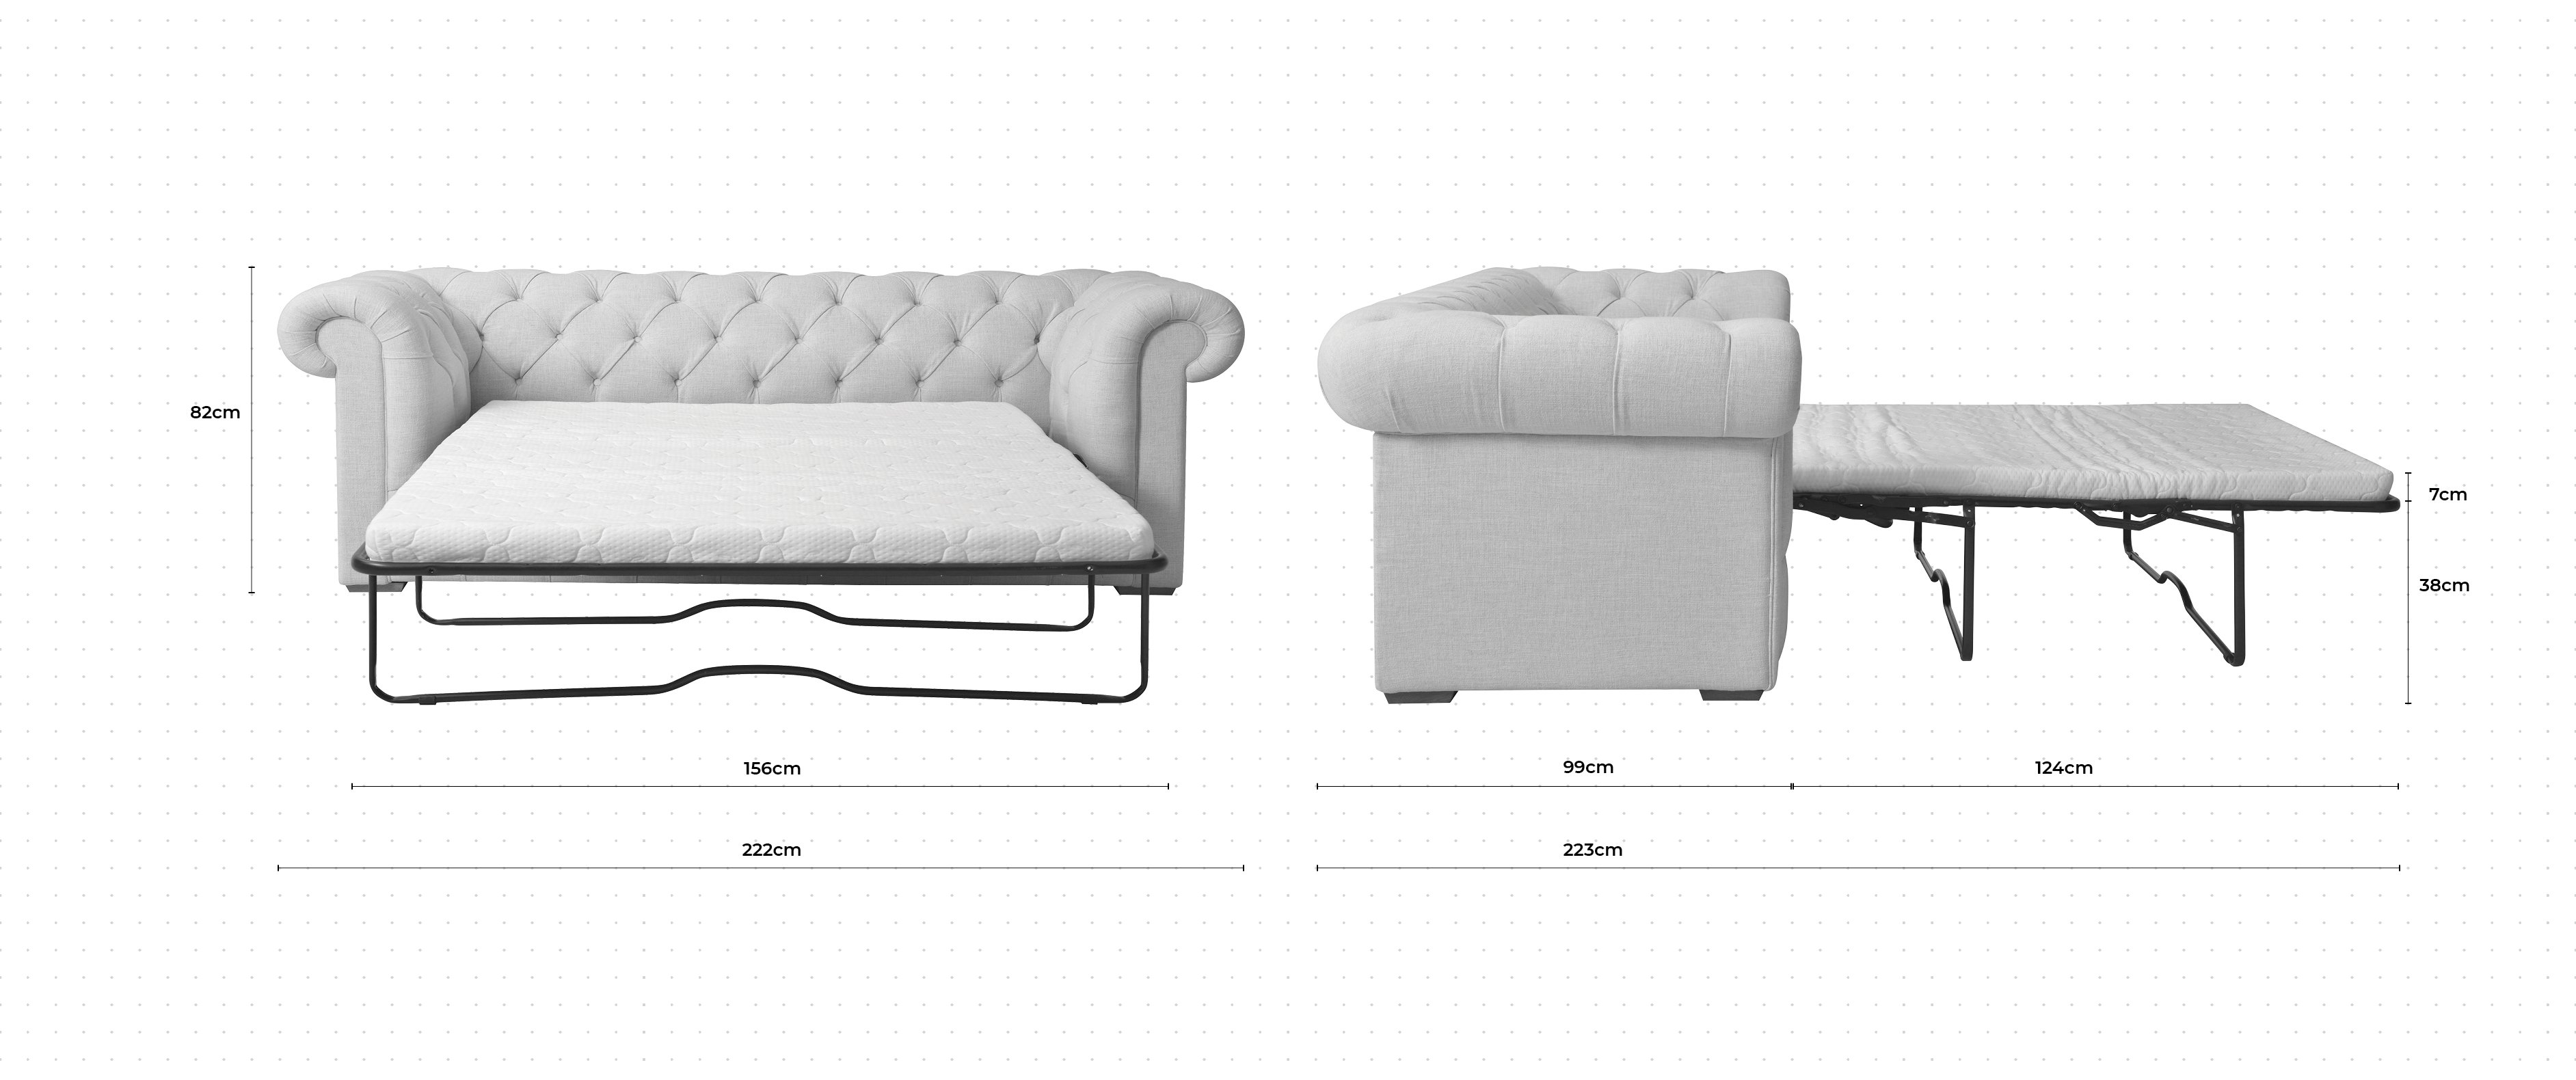 Gainsborough 2.5 Seater Sofa Bed dimensions